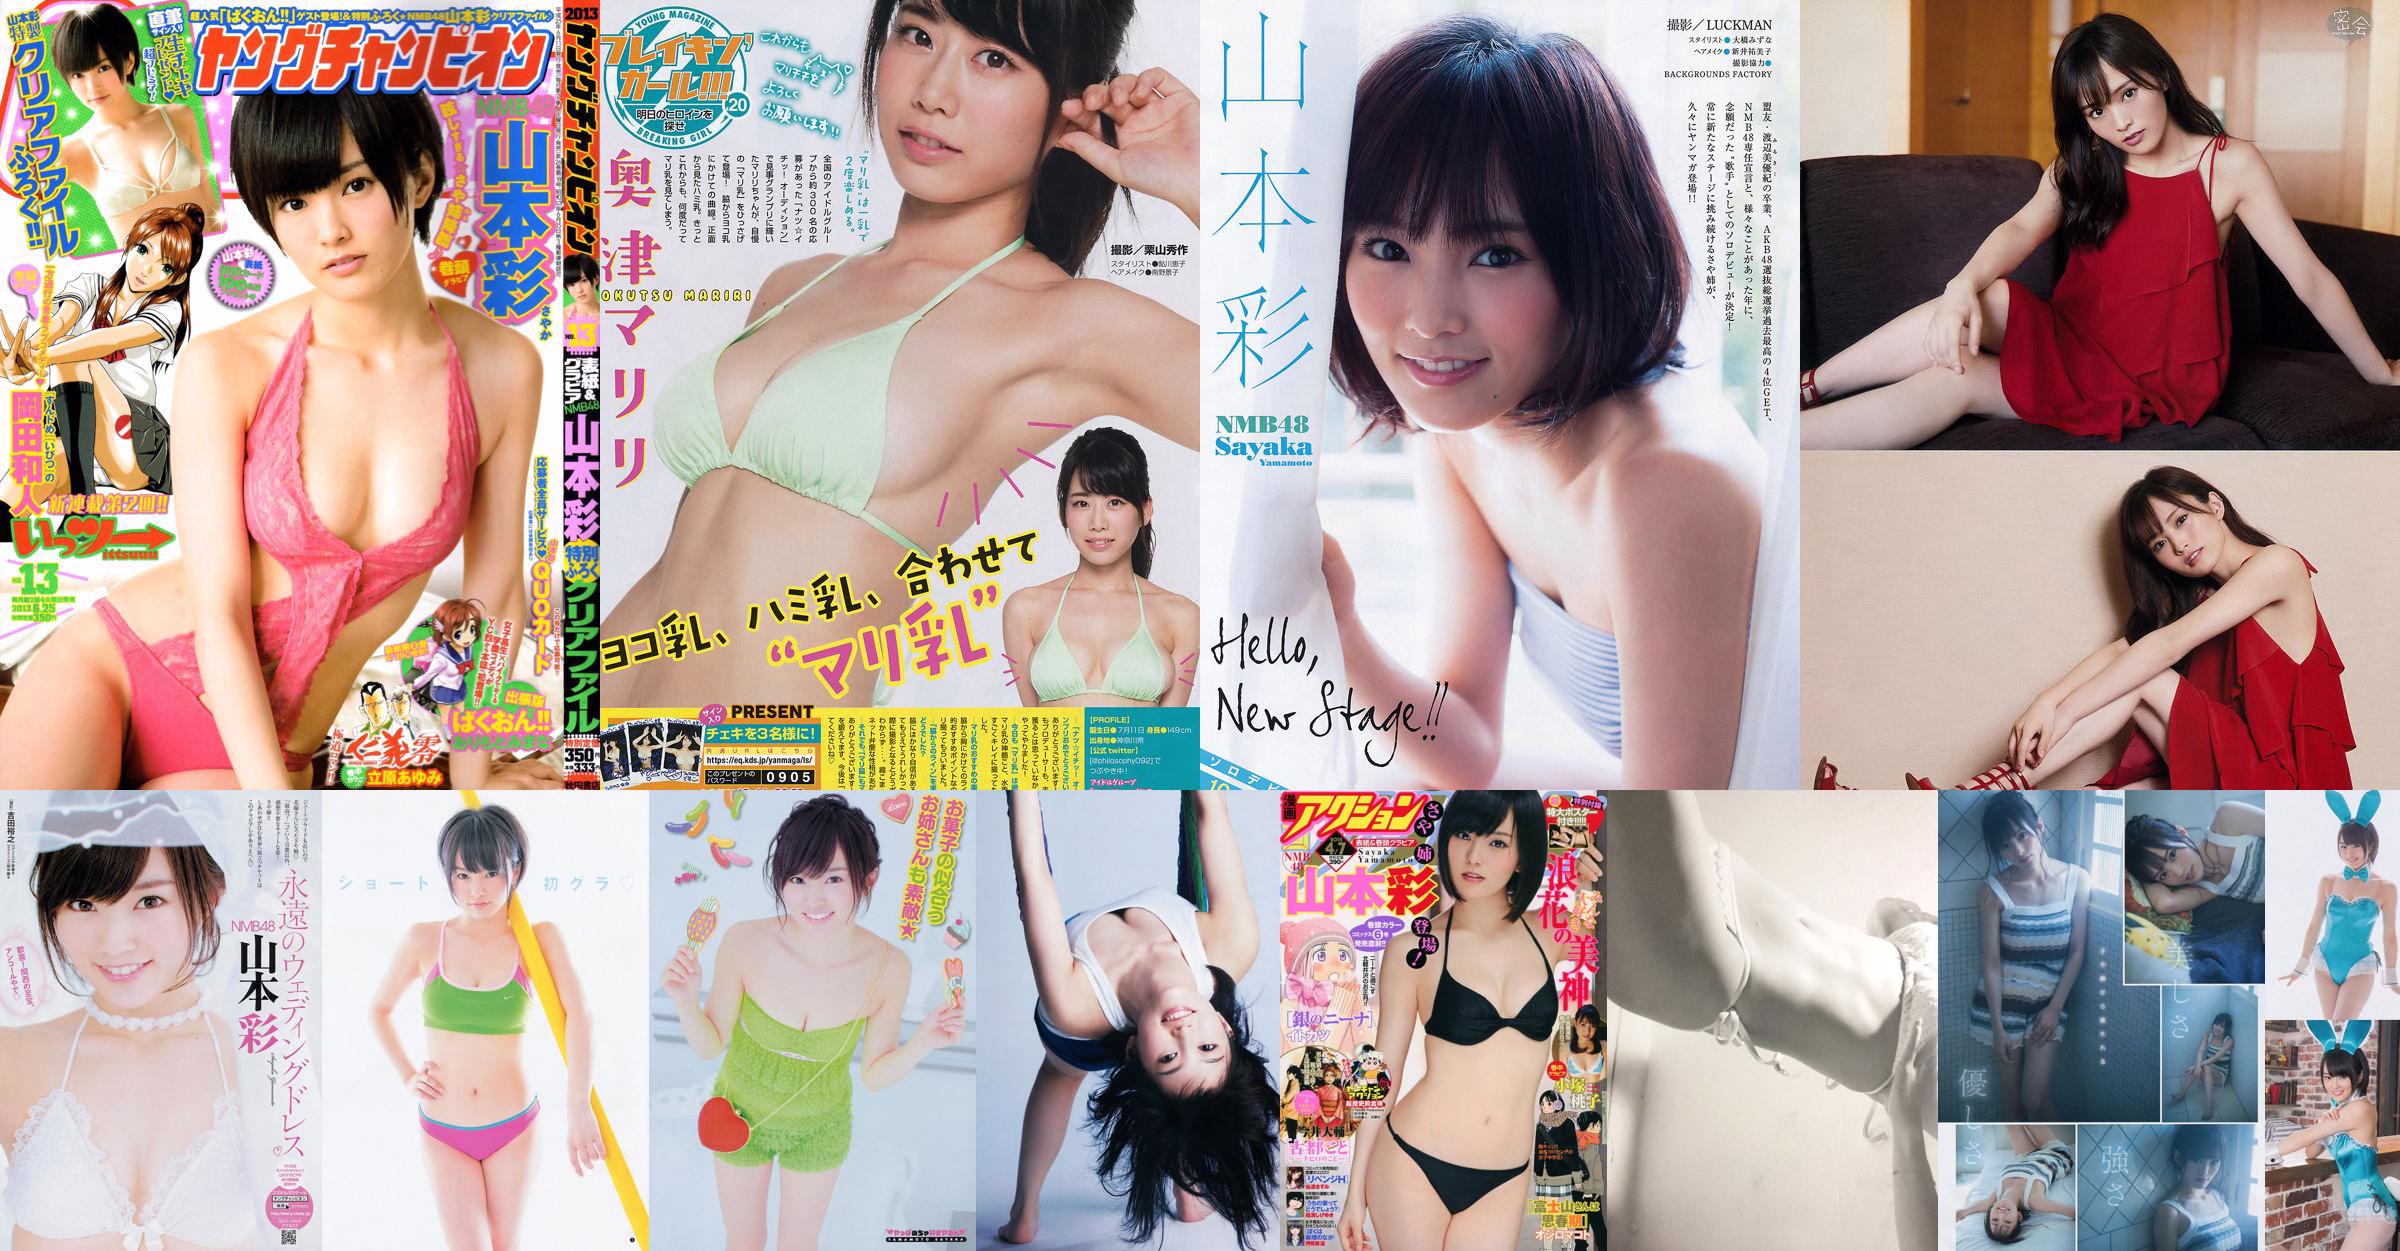 [Jeune Champion] Aya Yamamoto 2013 N ° 13 Photo Magazine No.63727a Page 1